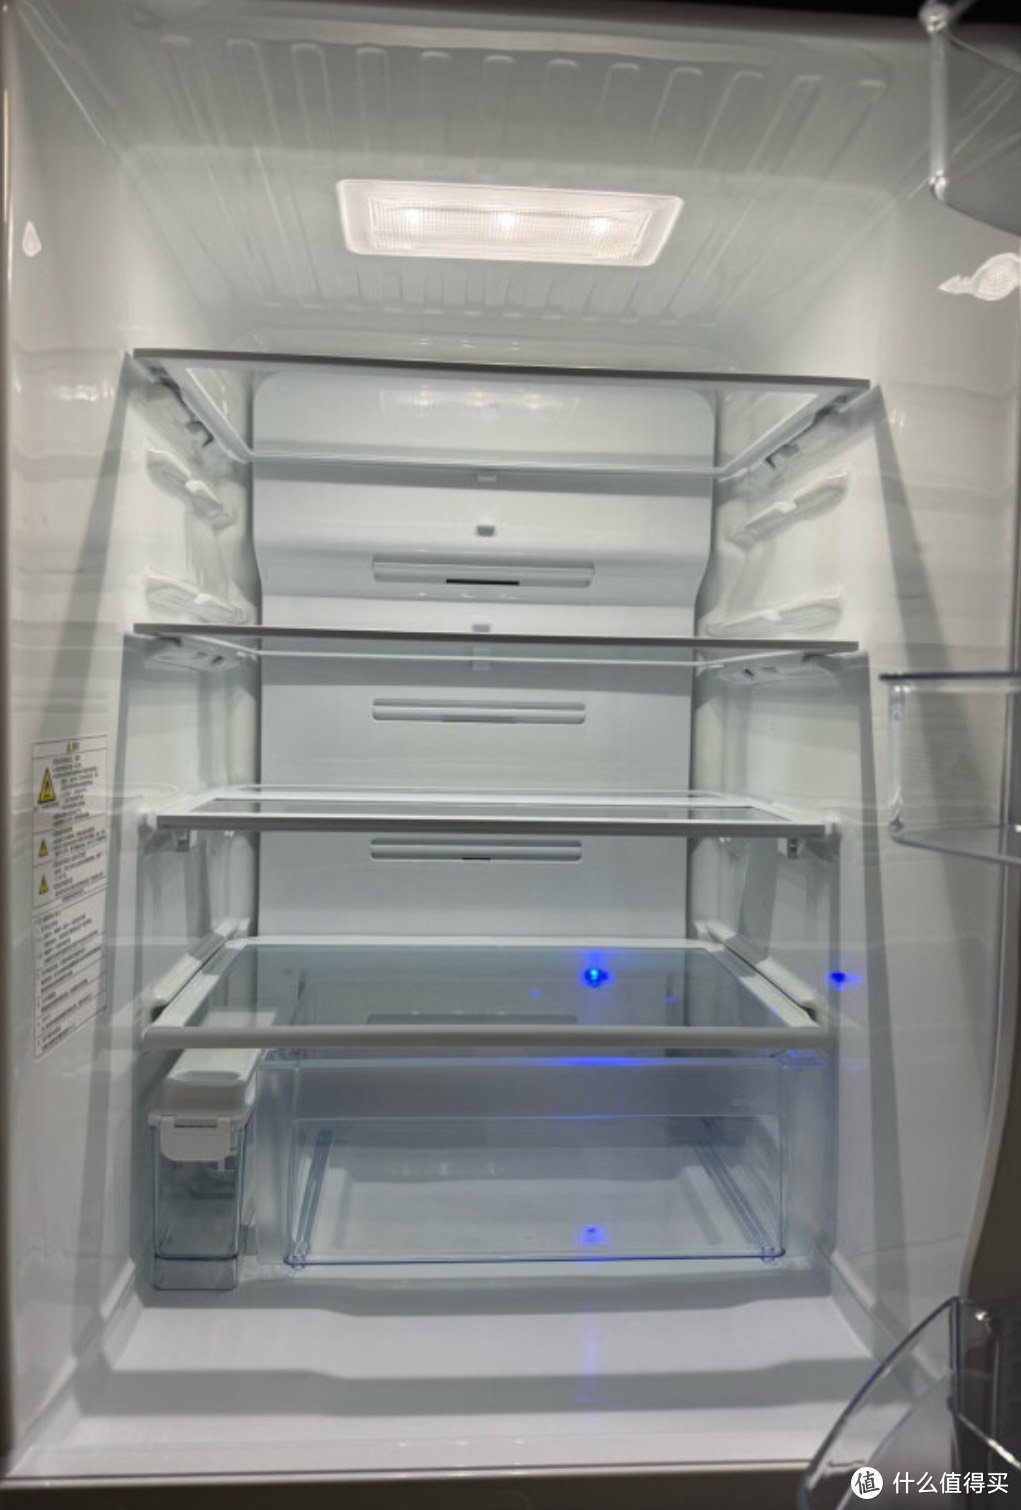 东芝电冰箱，品质生活的选择！